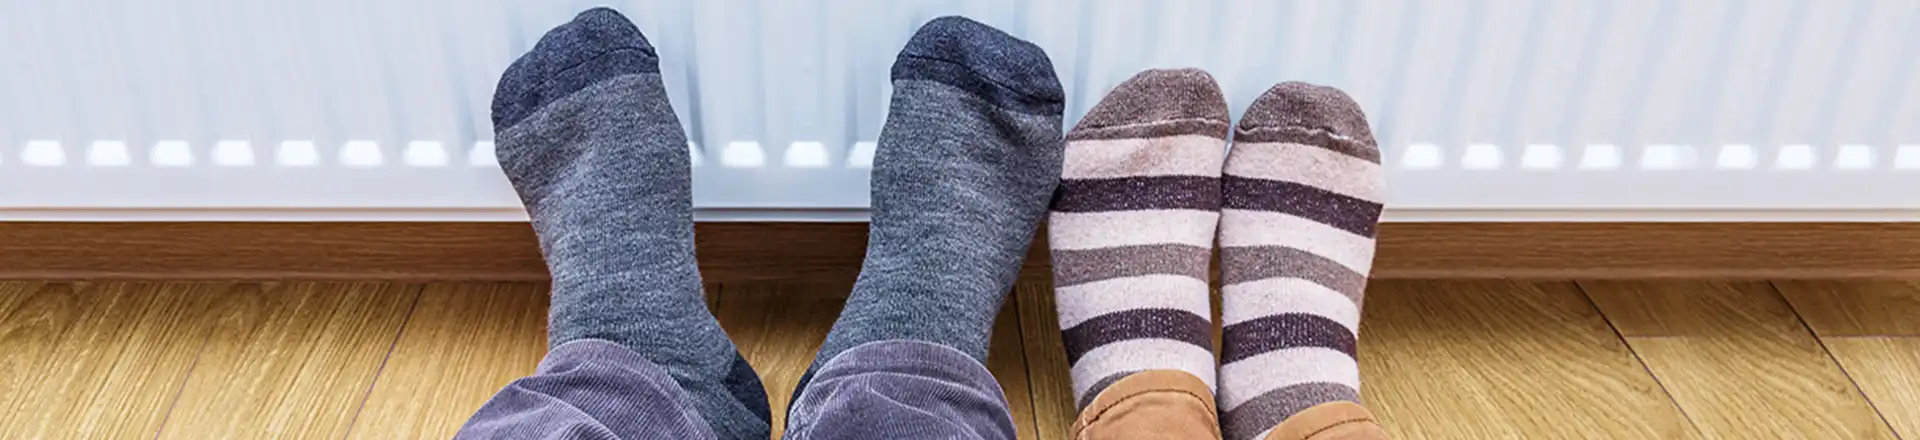 feet in socks in front of radiator heater